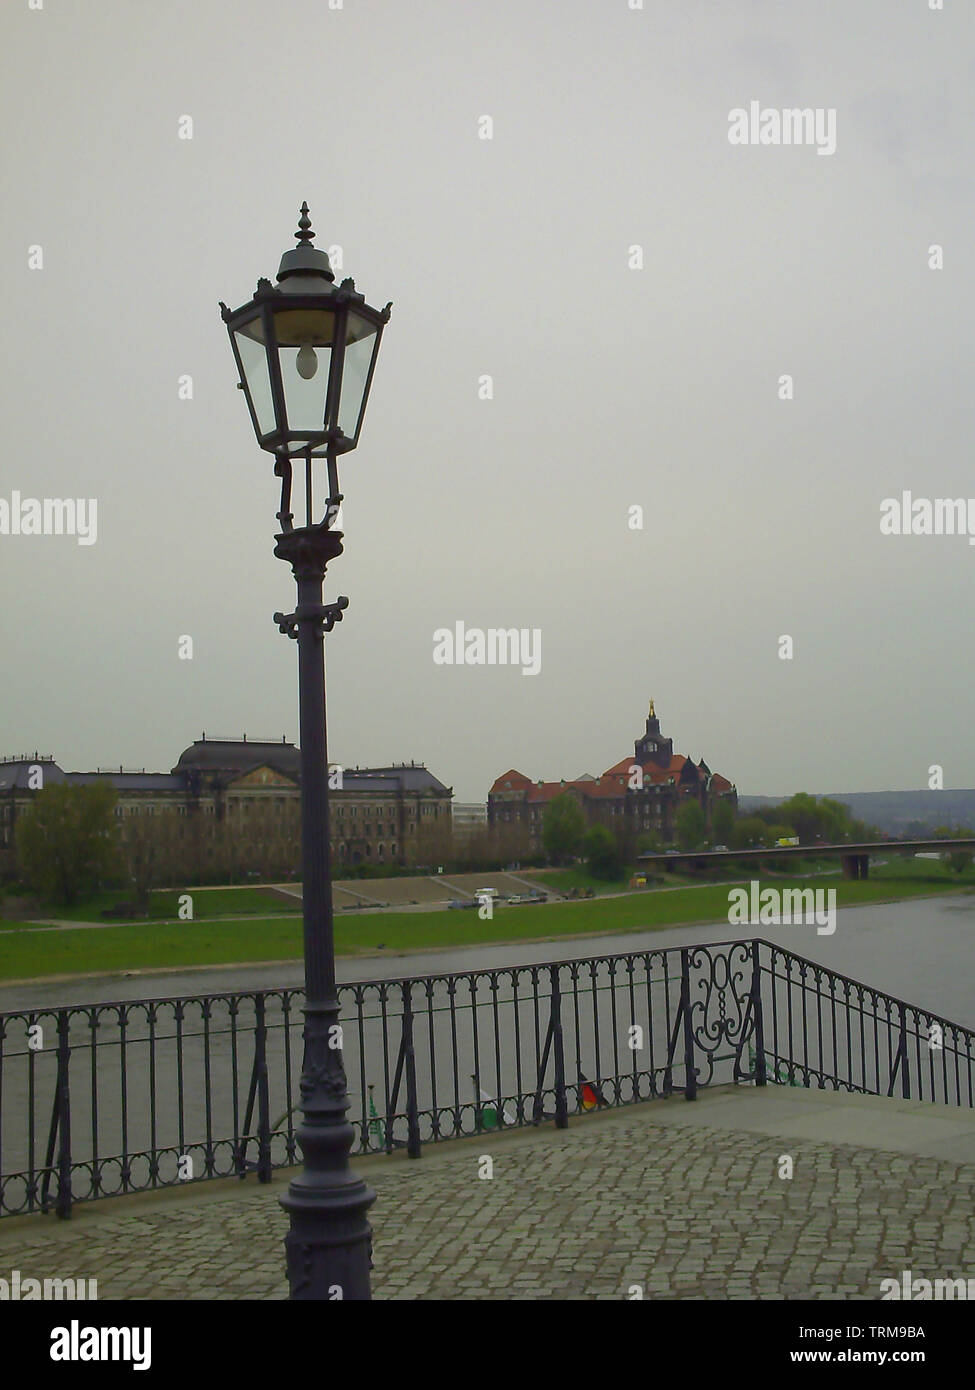 Stadt Laterne in Dresden. Vintage Straßenlaterne in der königlichen  Residenz in Dresden Stockfotografie - Alamy